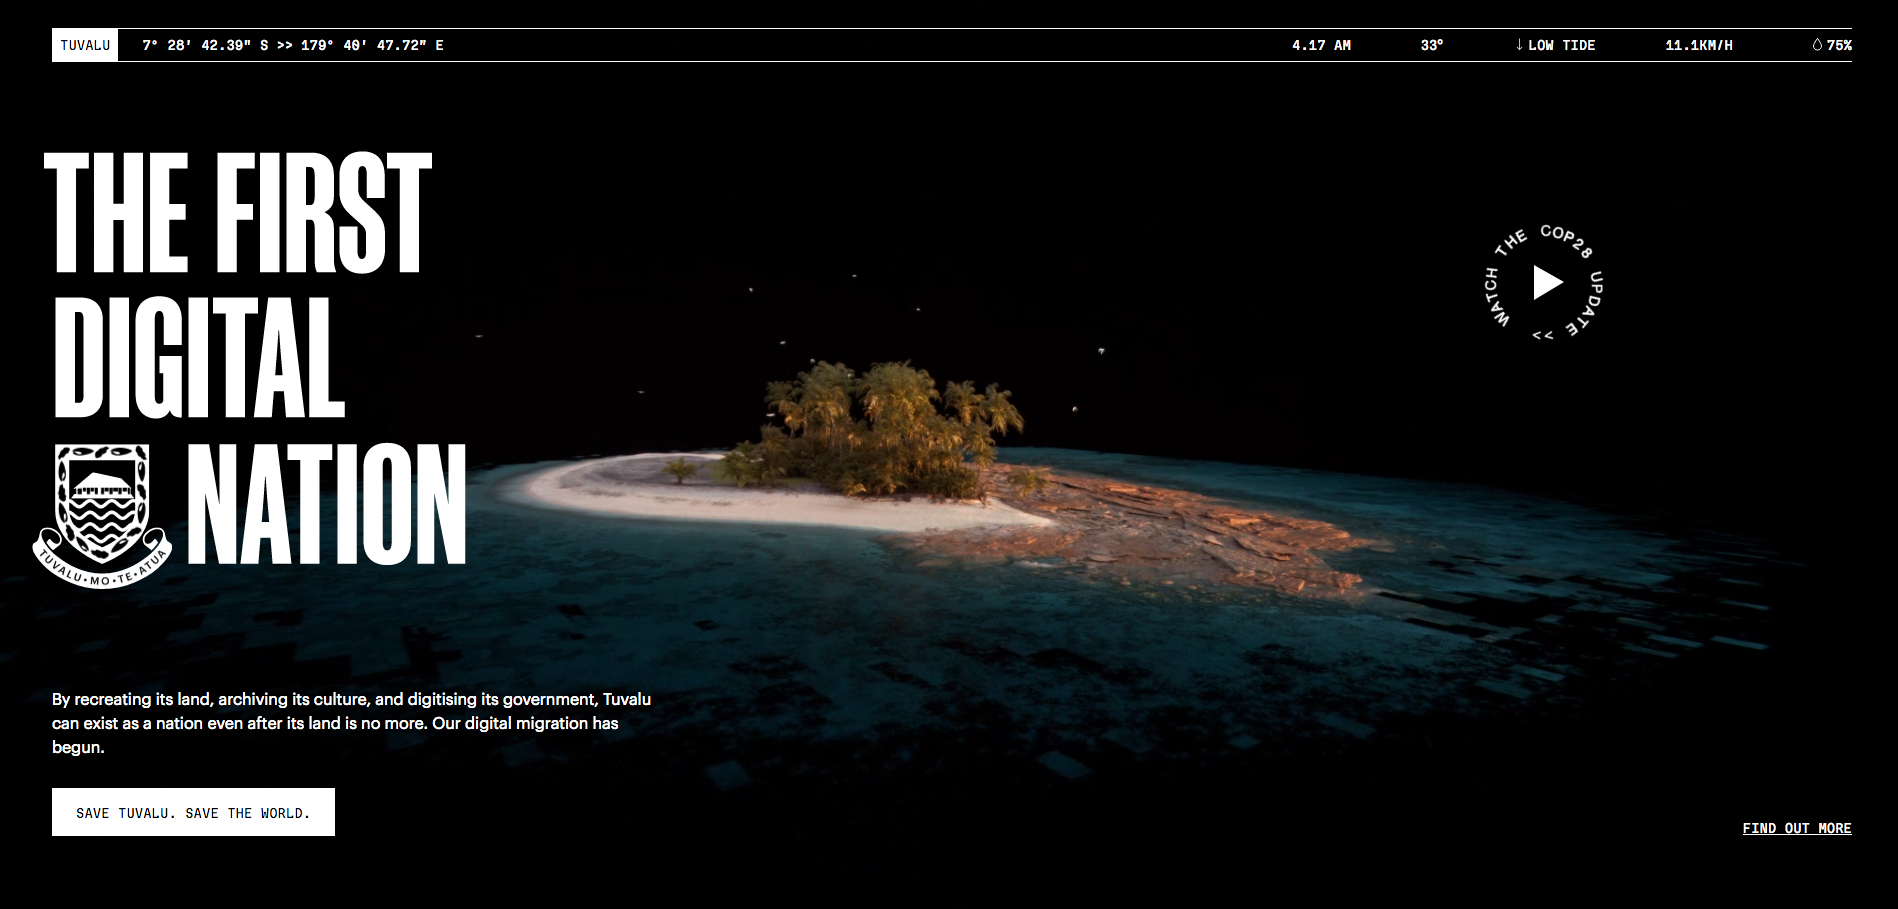 Print do site do Tuvalu, em que aparece a imagem de uma ilha